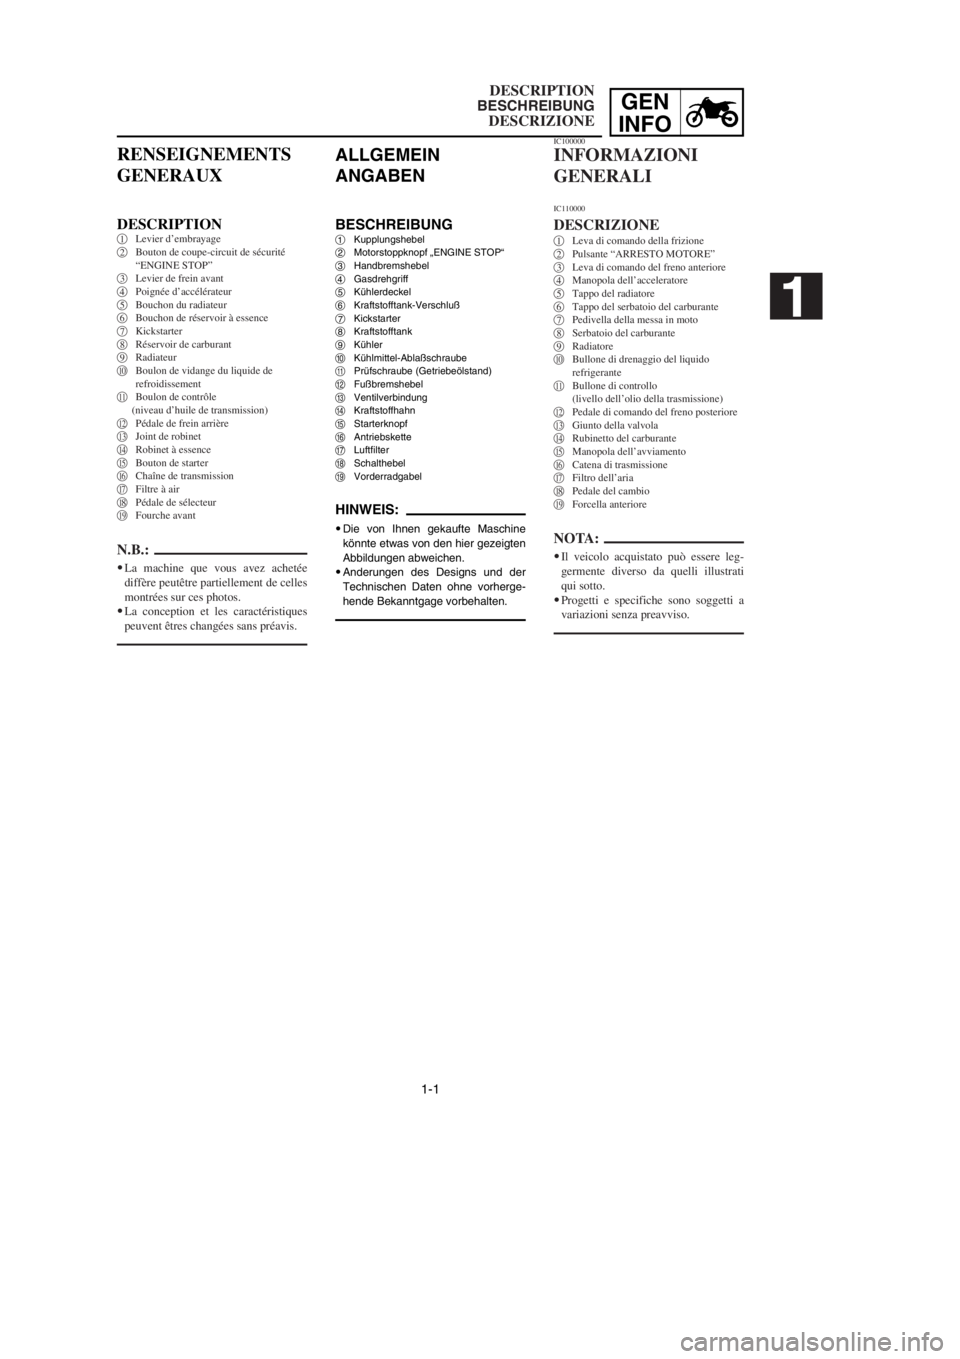 YAMAHA YZ250LC 2002  Owners Manual 1-1
DESCRIPTION
BESCHREIBUNG
DESCRIZIONE
GEN
INFO
ALLGEMEIN
ANGABEN
BESCHREIBUNG1Kupplungshebel
2Motorstoppknopf „ENGINE STOP“
3Handbremshebel
4Gasdrehgriff
5Kühlerdeckel
6Kraftstofftank-Verschlu